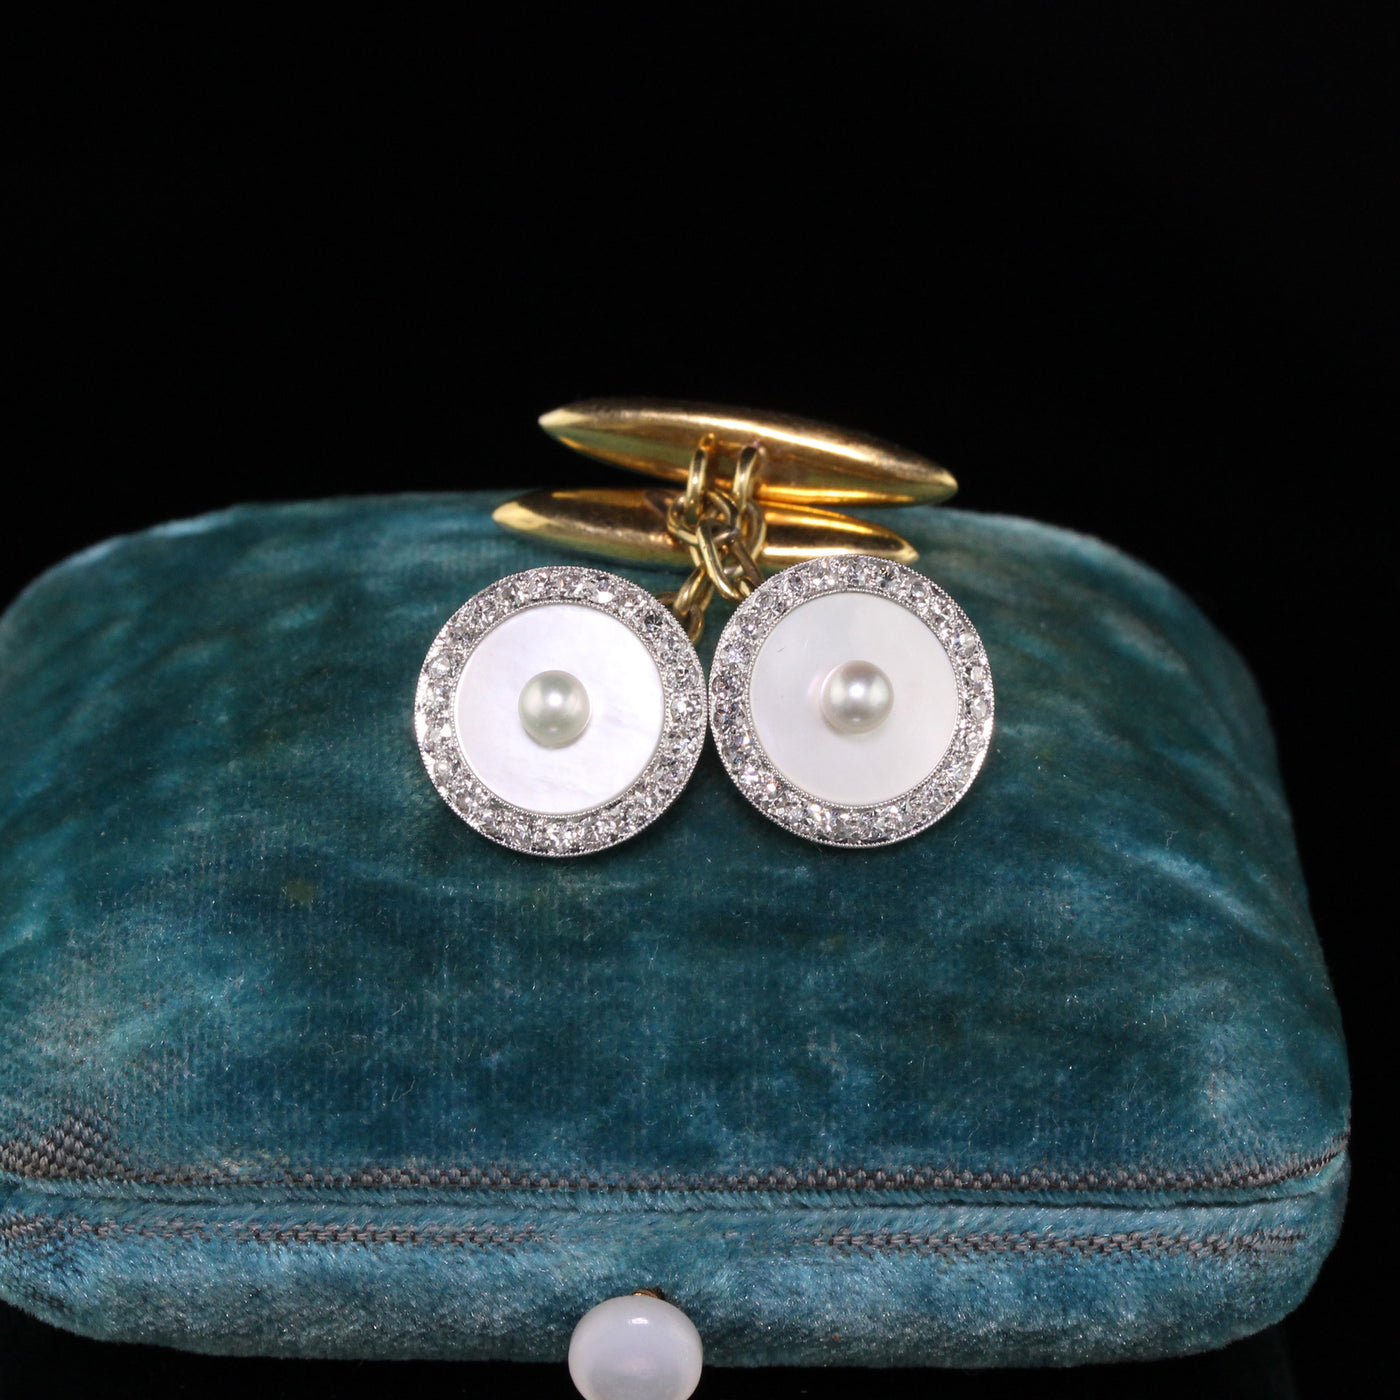 Antique Art Deco Platinum Diamond and Pearl Cufflinks